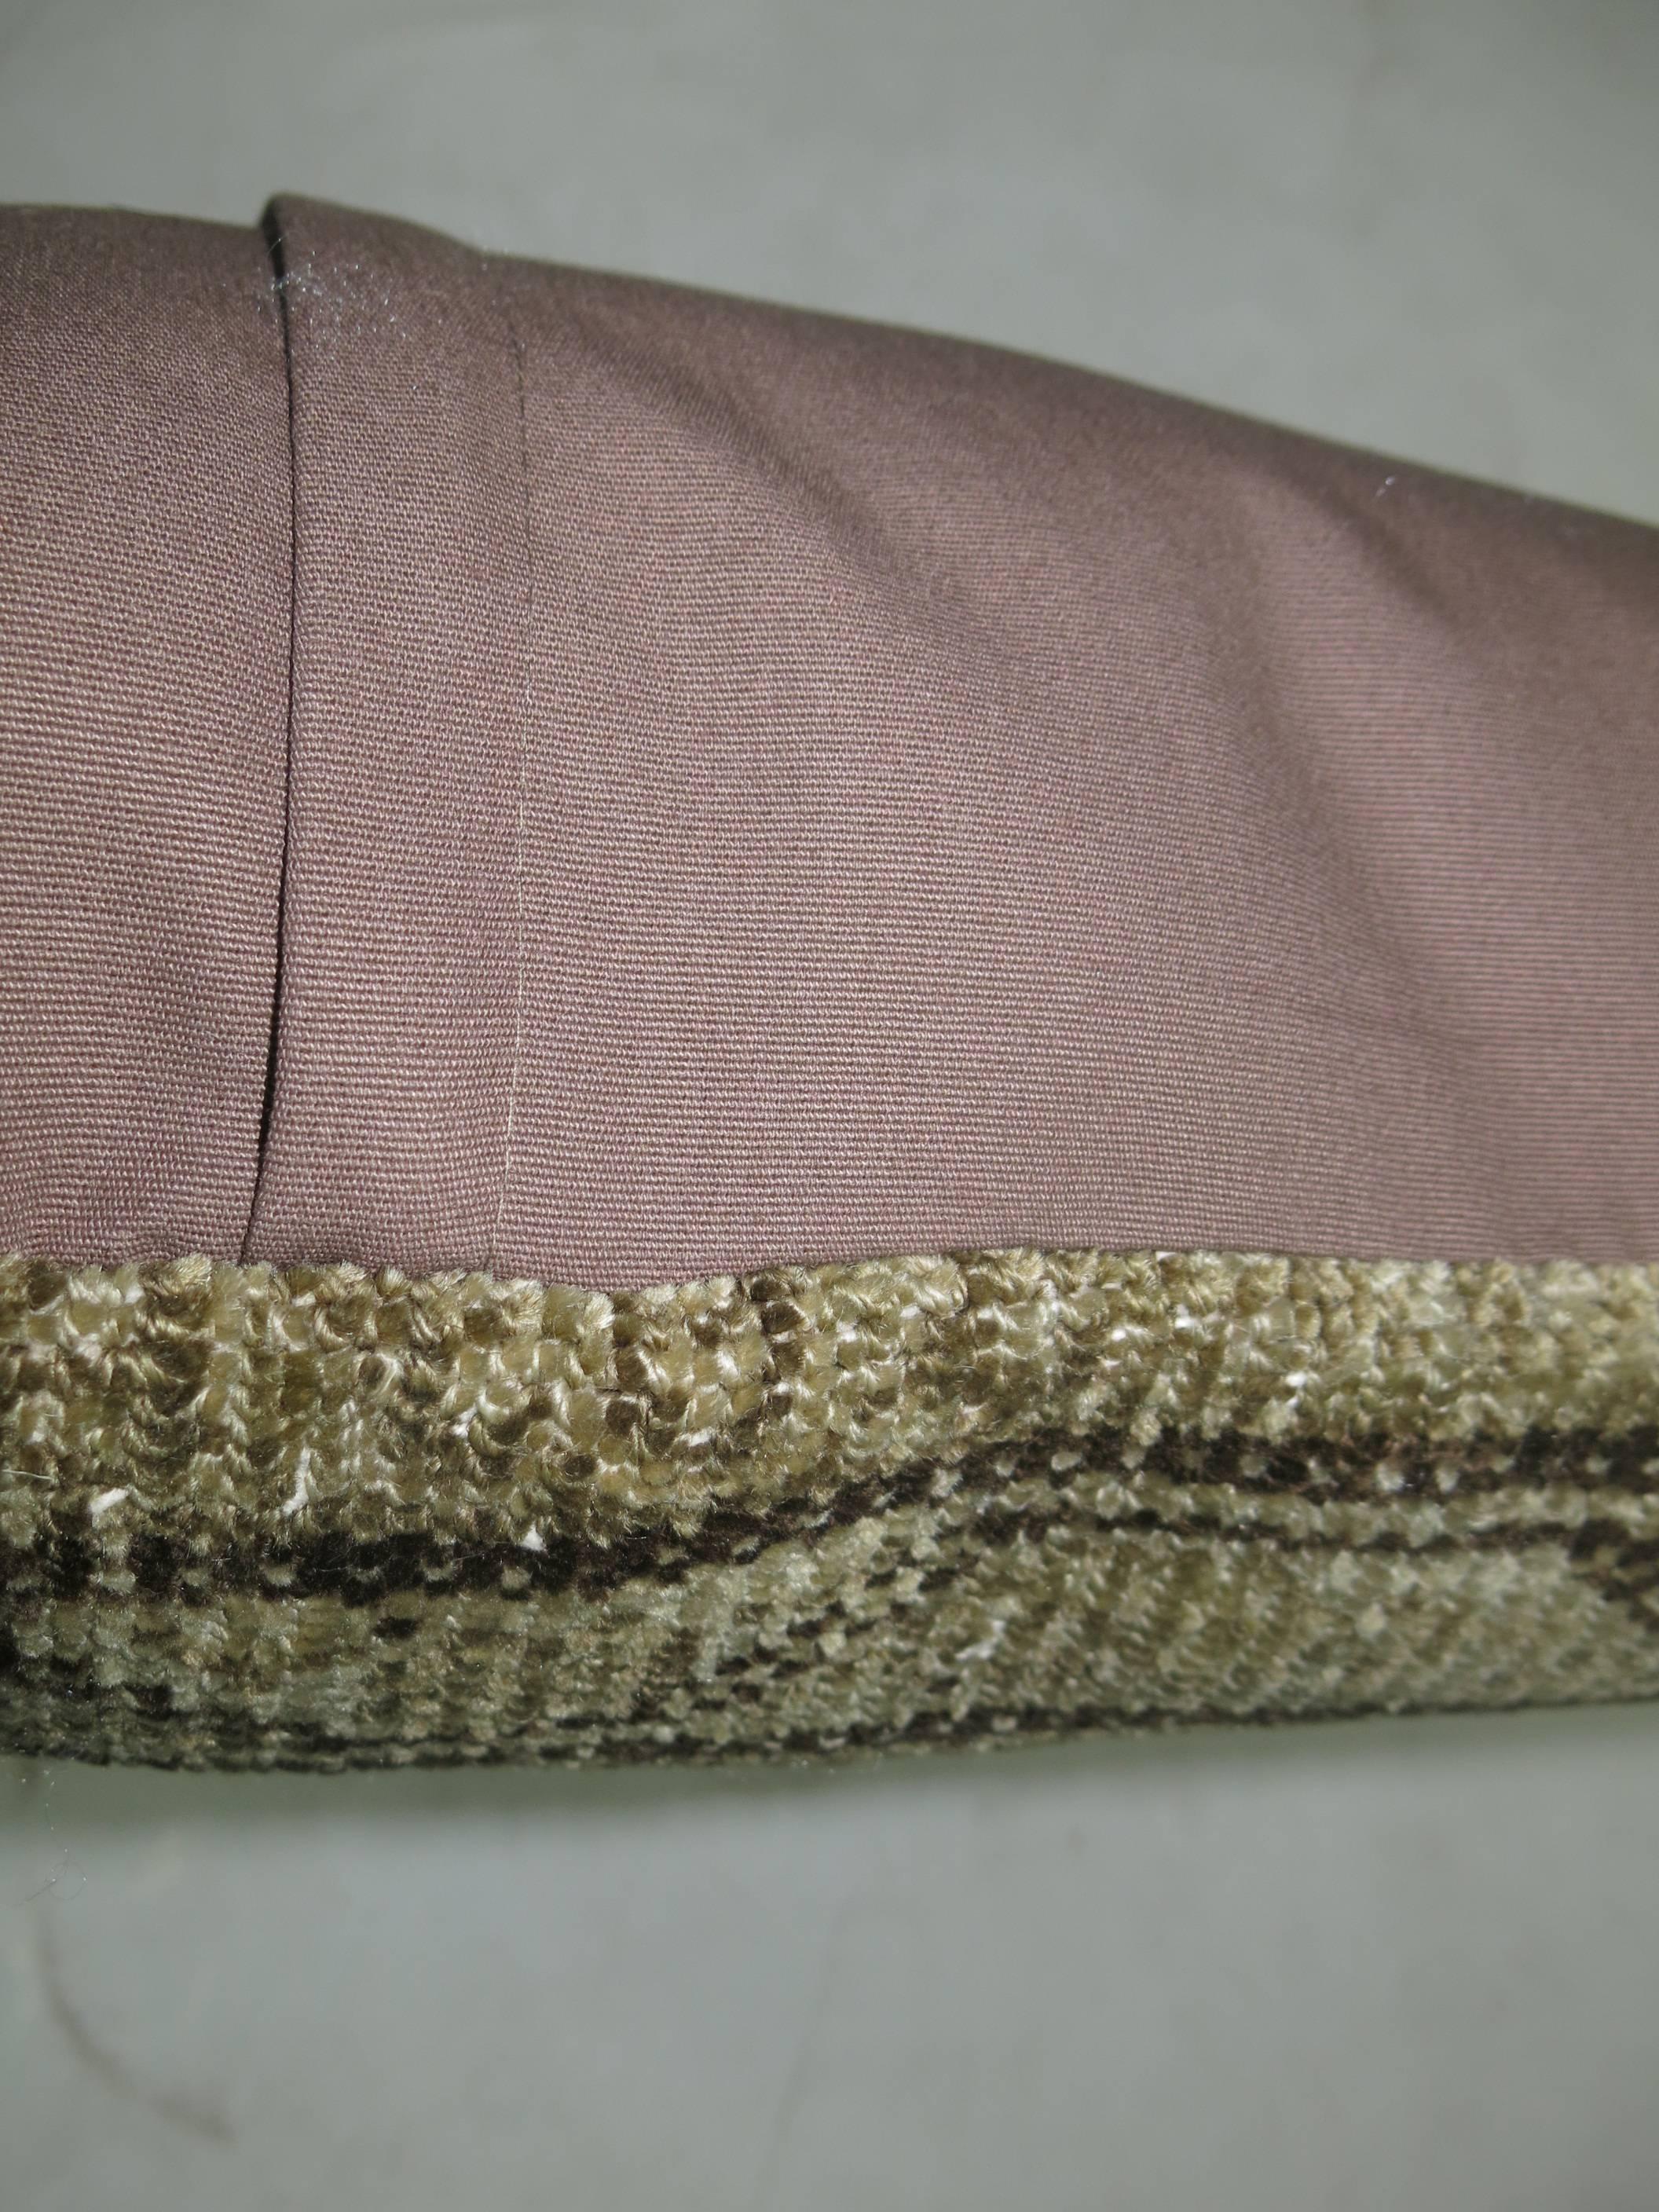 Agra Malayer Lumbar Rug Pillow